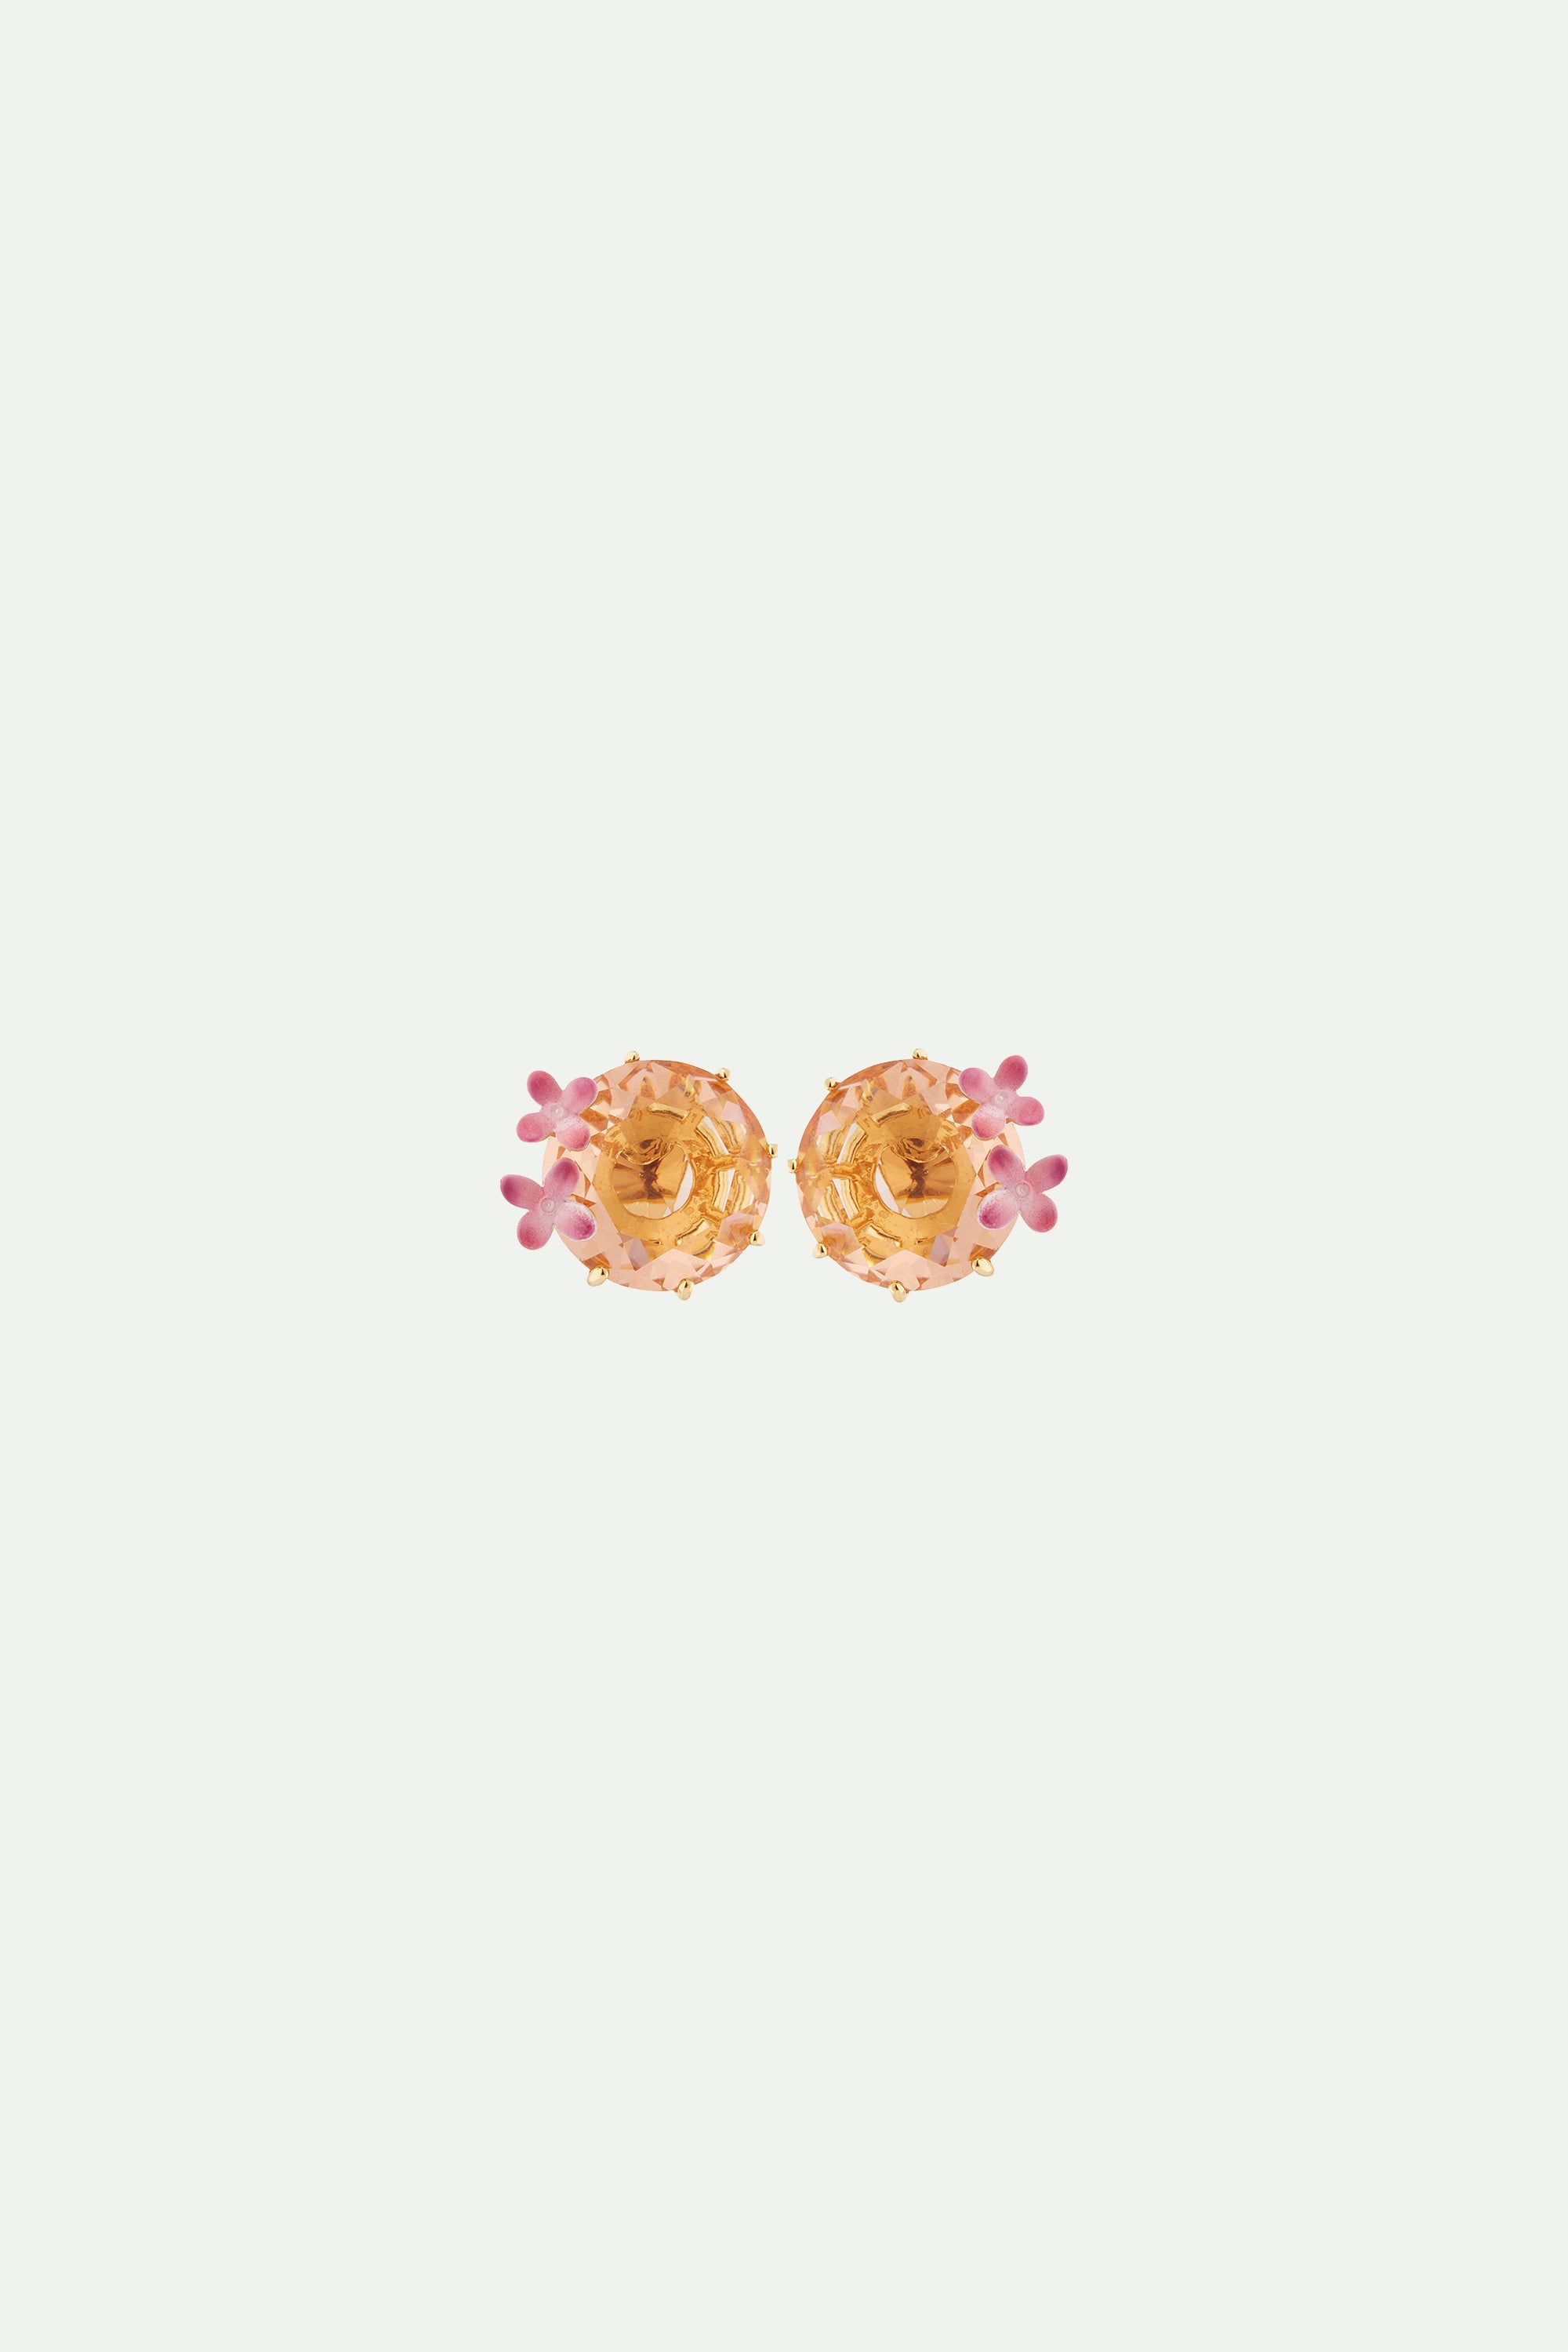 Boucles d'oreilles tiges fleurs et pierre ronde la diamantine rose abricot